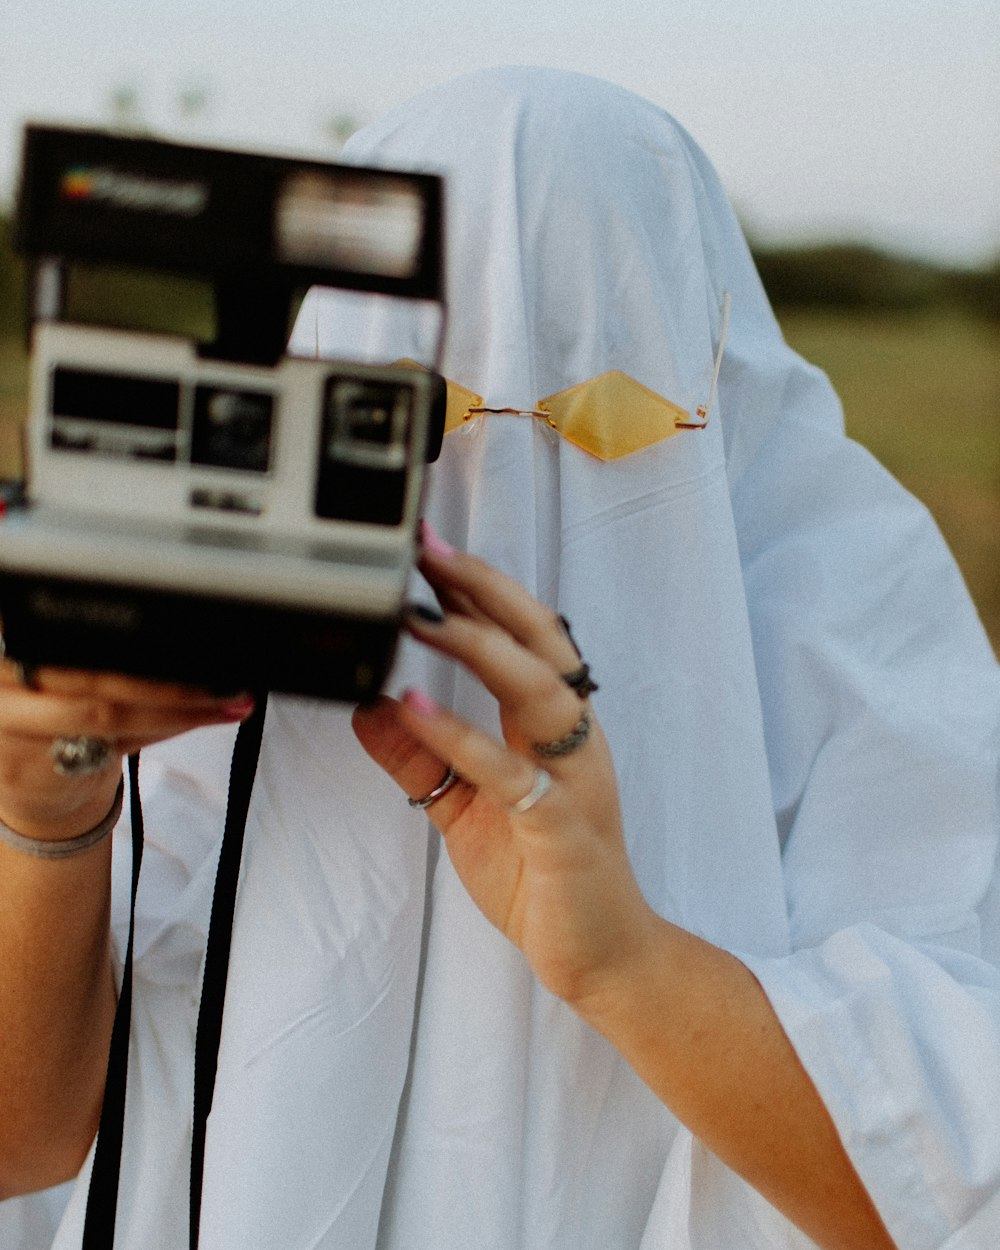 Persona sosteniendo una cámara Polaroid durante el día